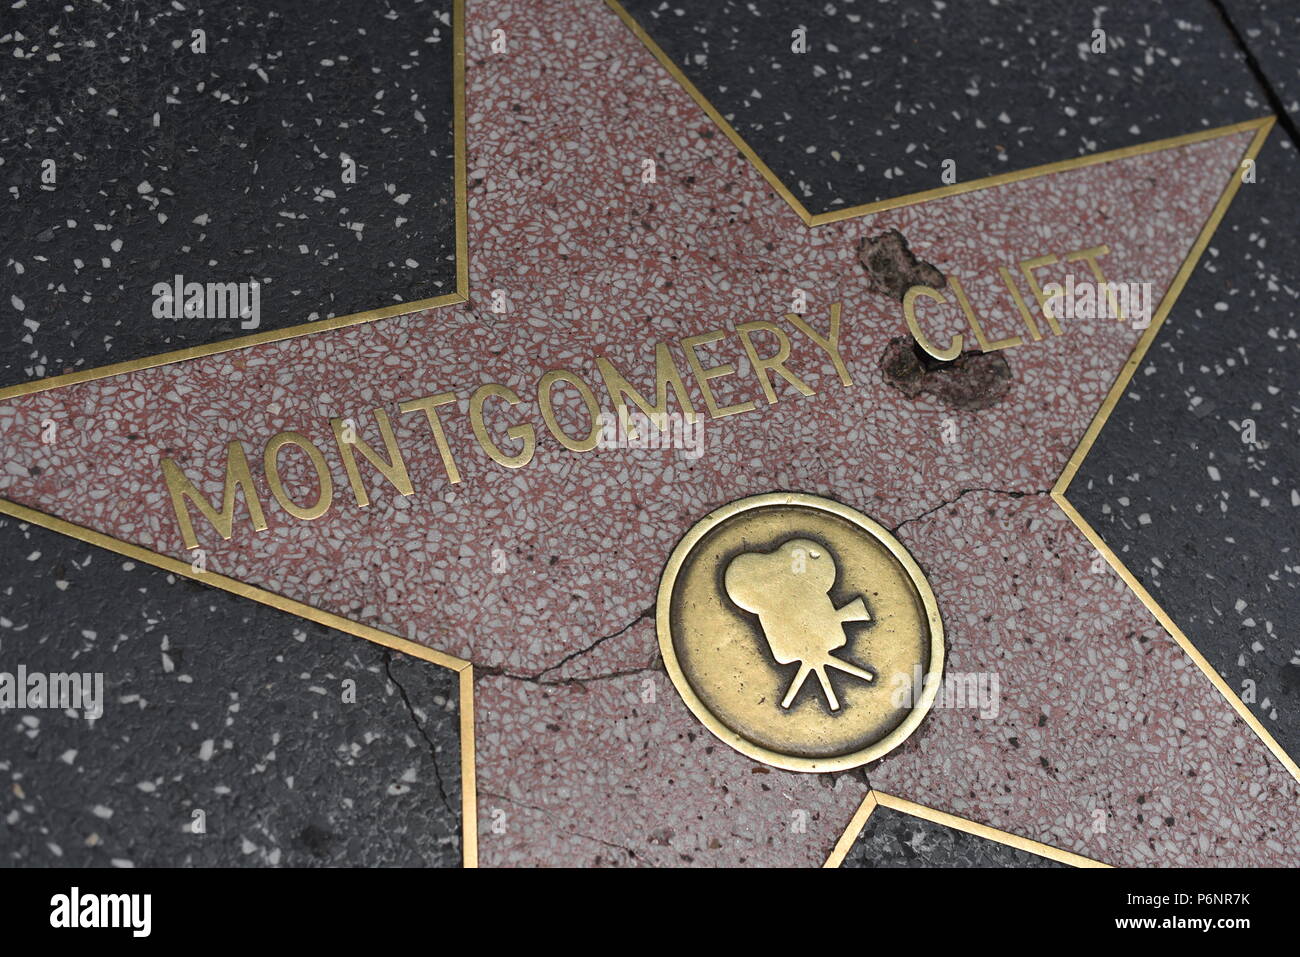 HOLLYWOOD, CA - 29 Giugno: Montgomery Clift stella sulla Hollywood Walk of Fame in Hollywood, la California il 29 giugno 2018. Foto Stock